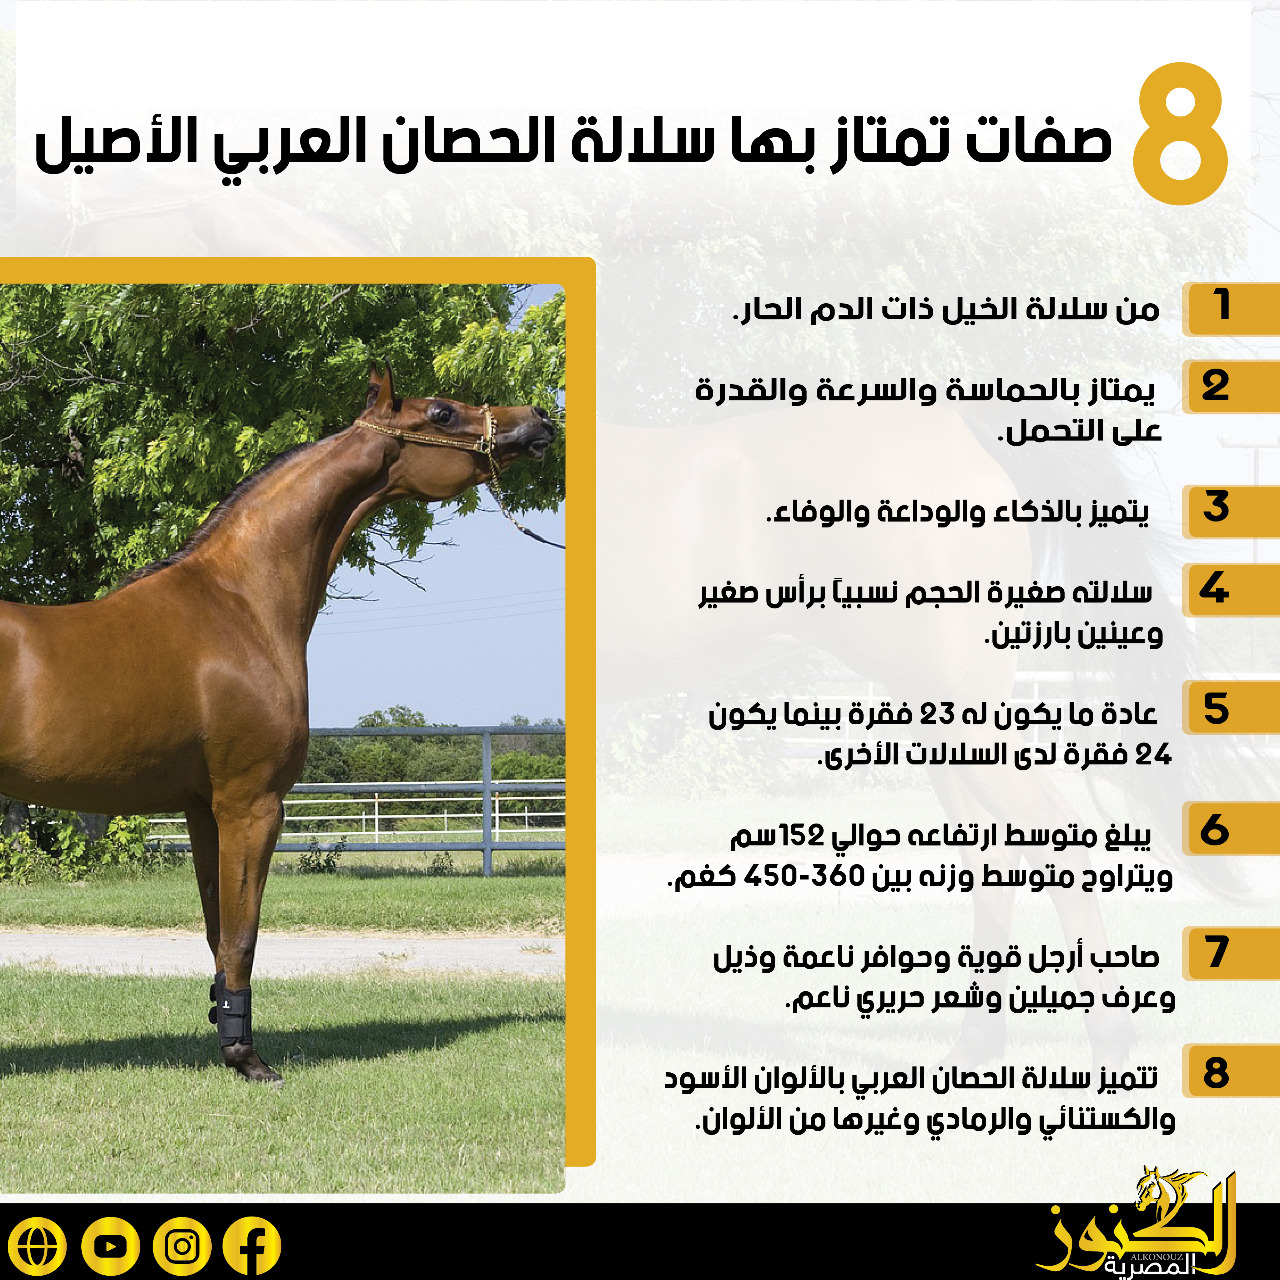 8 صفات تمتاز بها سلالة الحصان العربي الأصيل (انفوجراف)